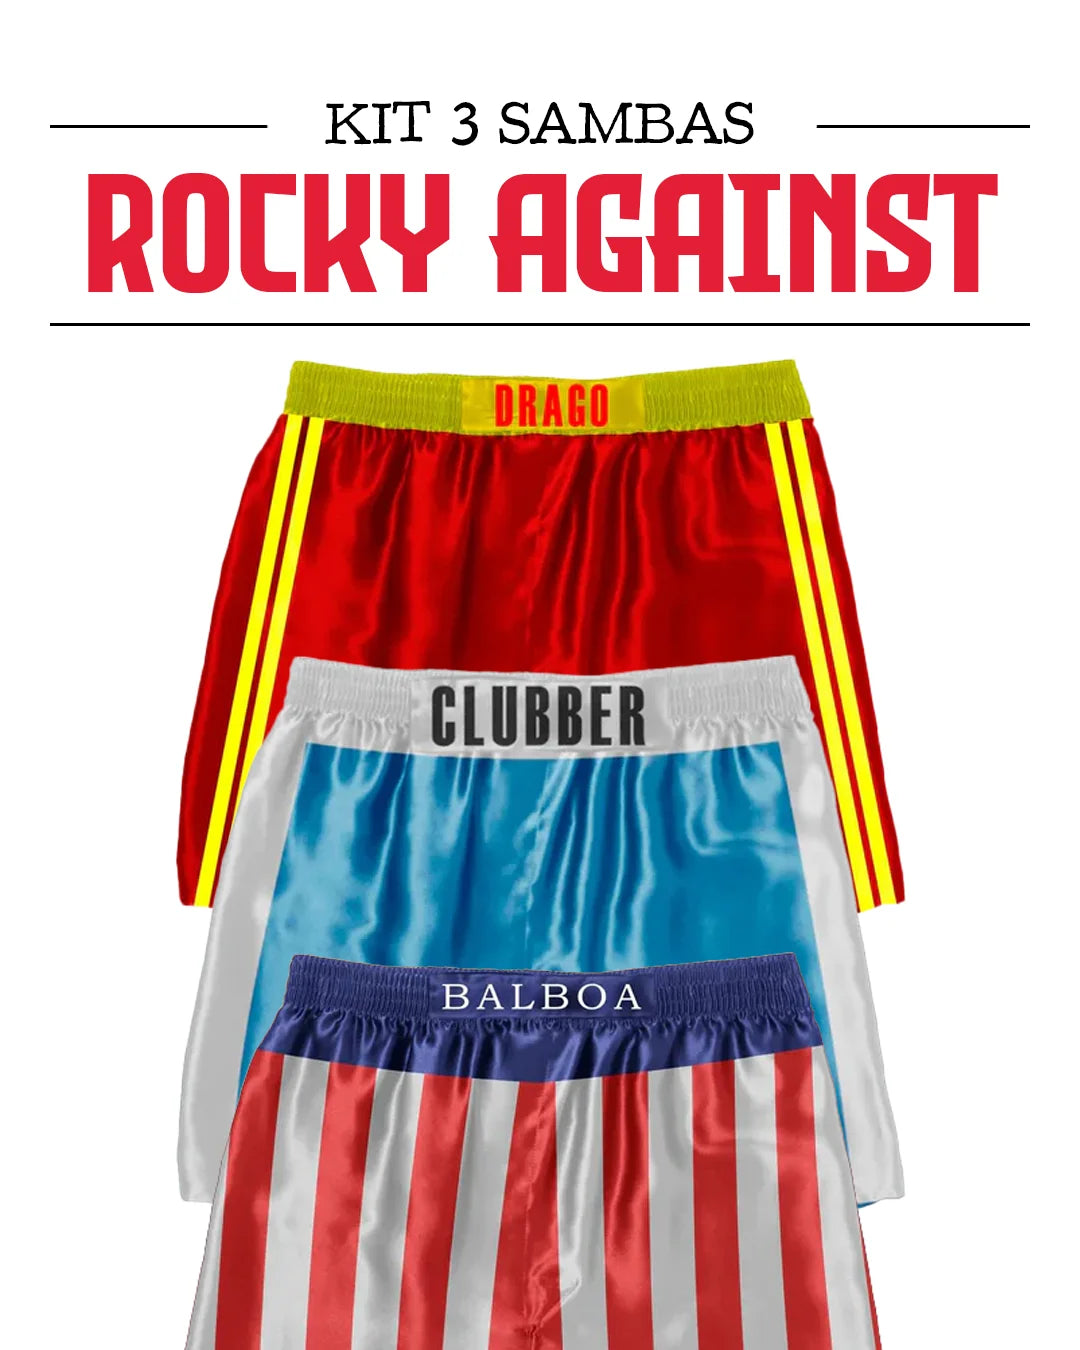 Kit 3 Sambas - Rocky Against